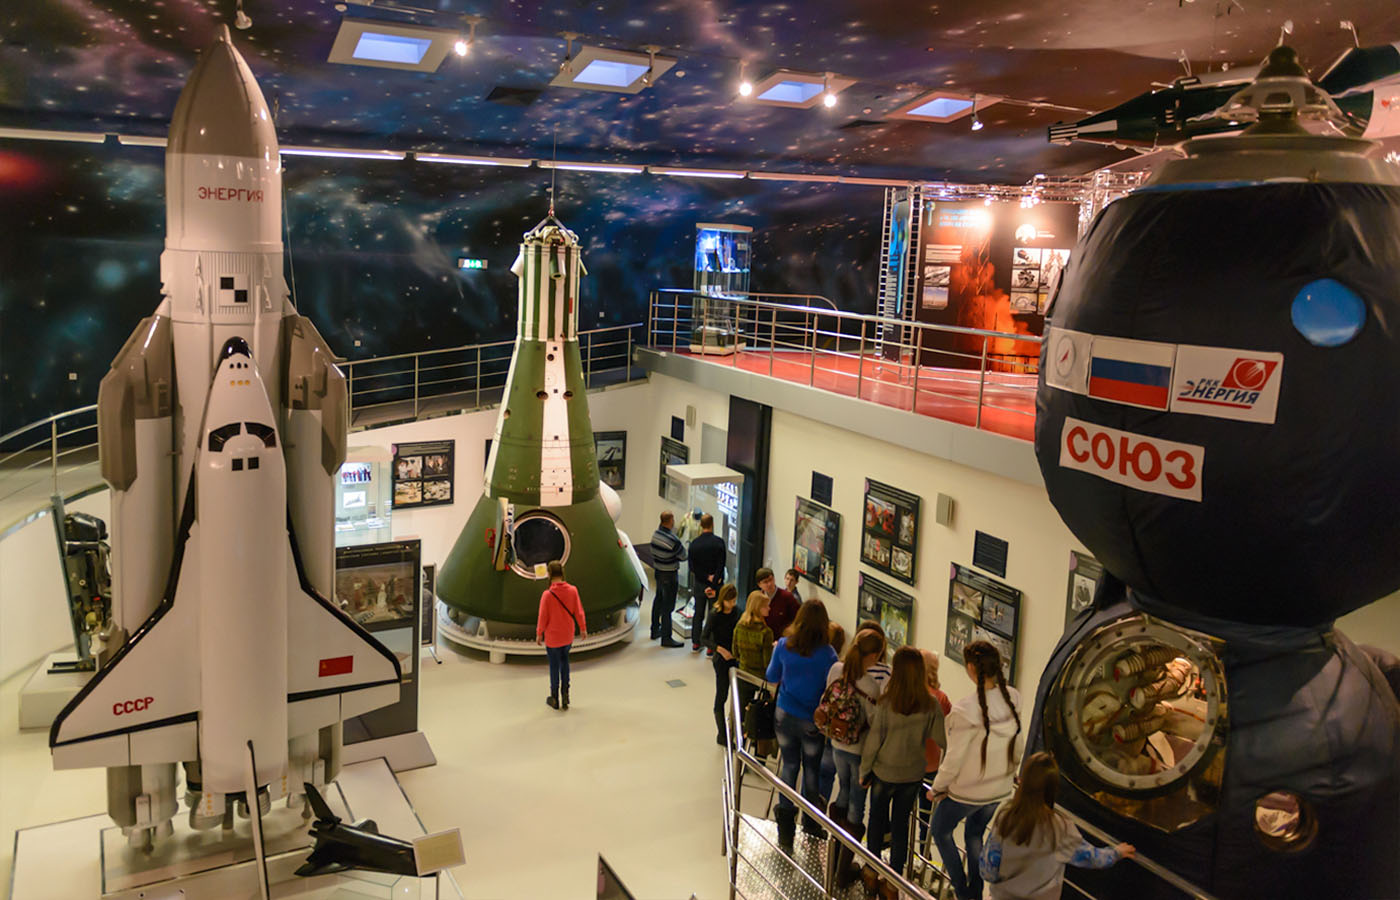 в музее космонавтики